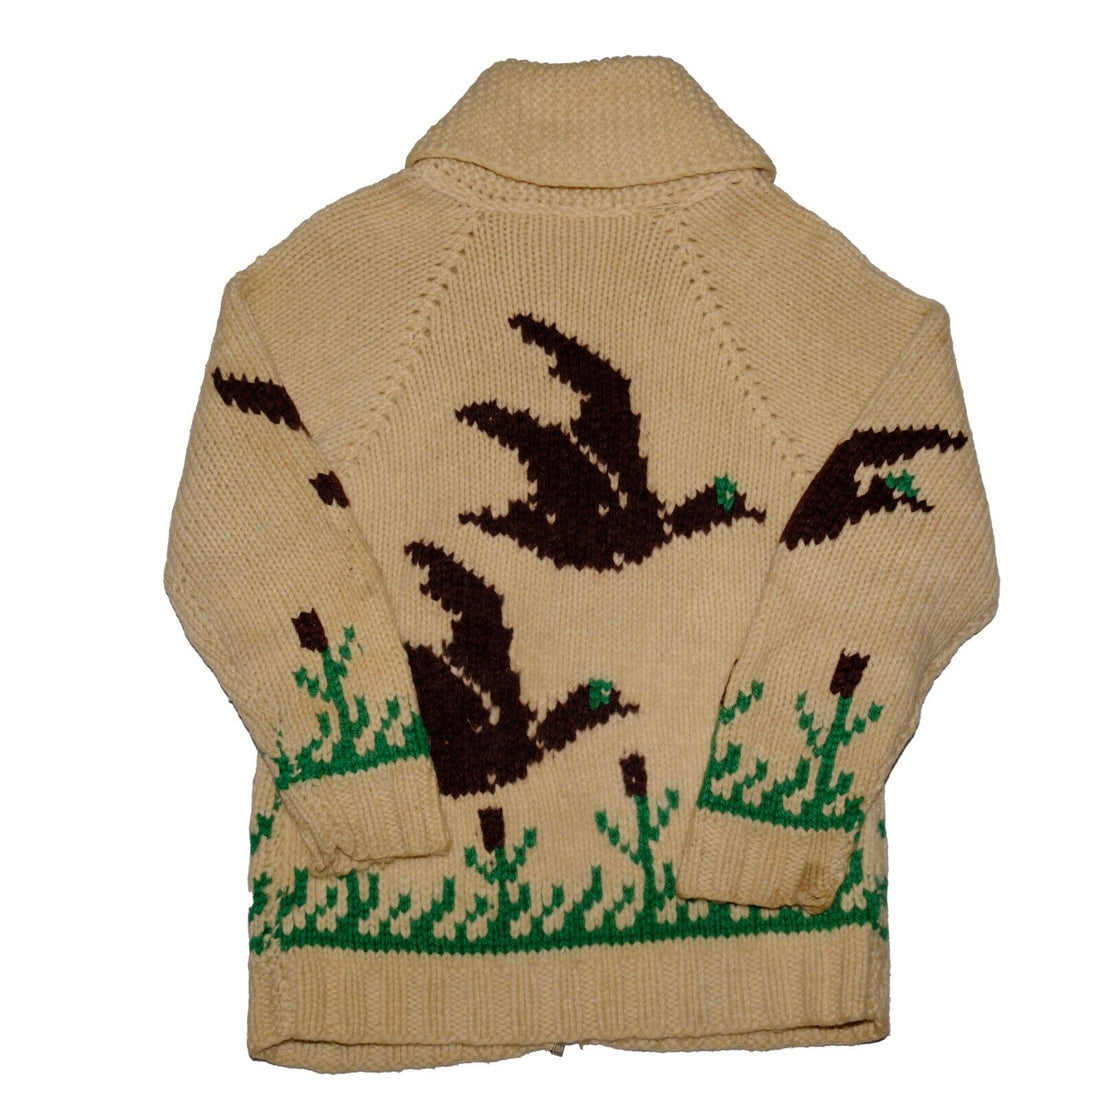 Vintage Duck Wool Knit Cowichan Size Small Beige Lighting Zap 80s